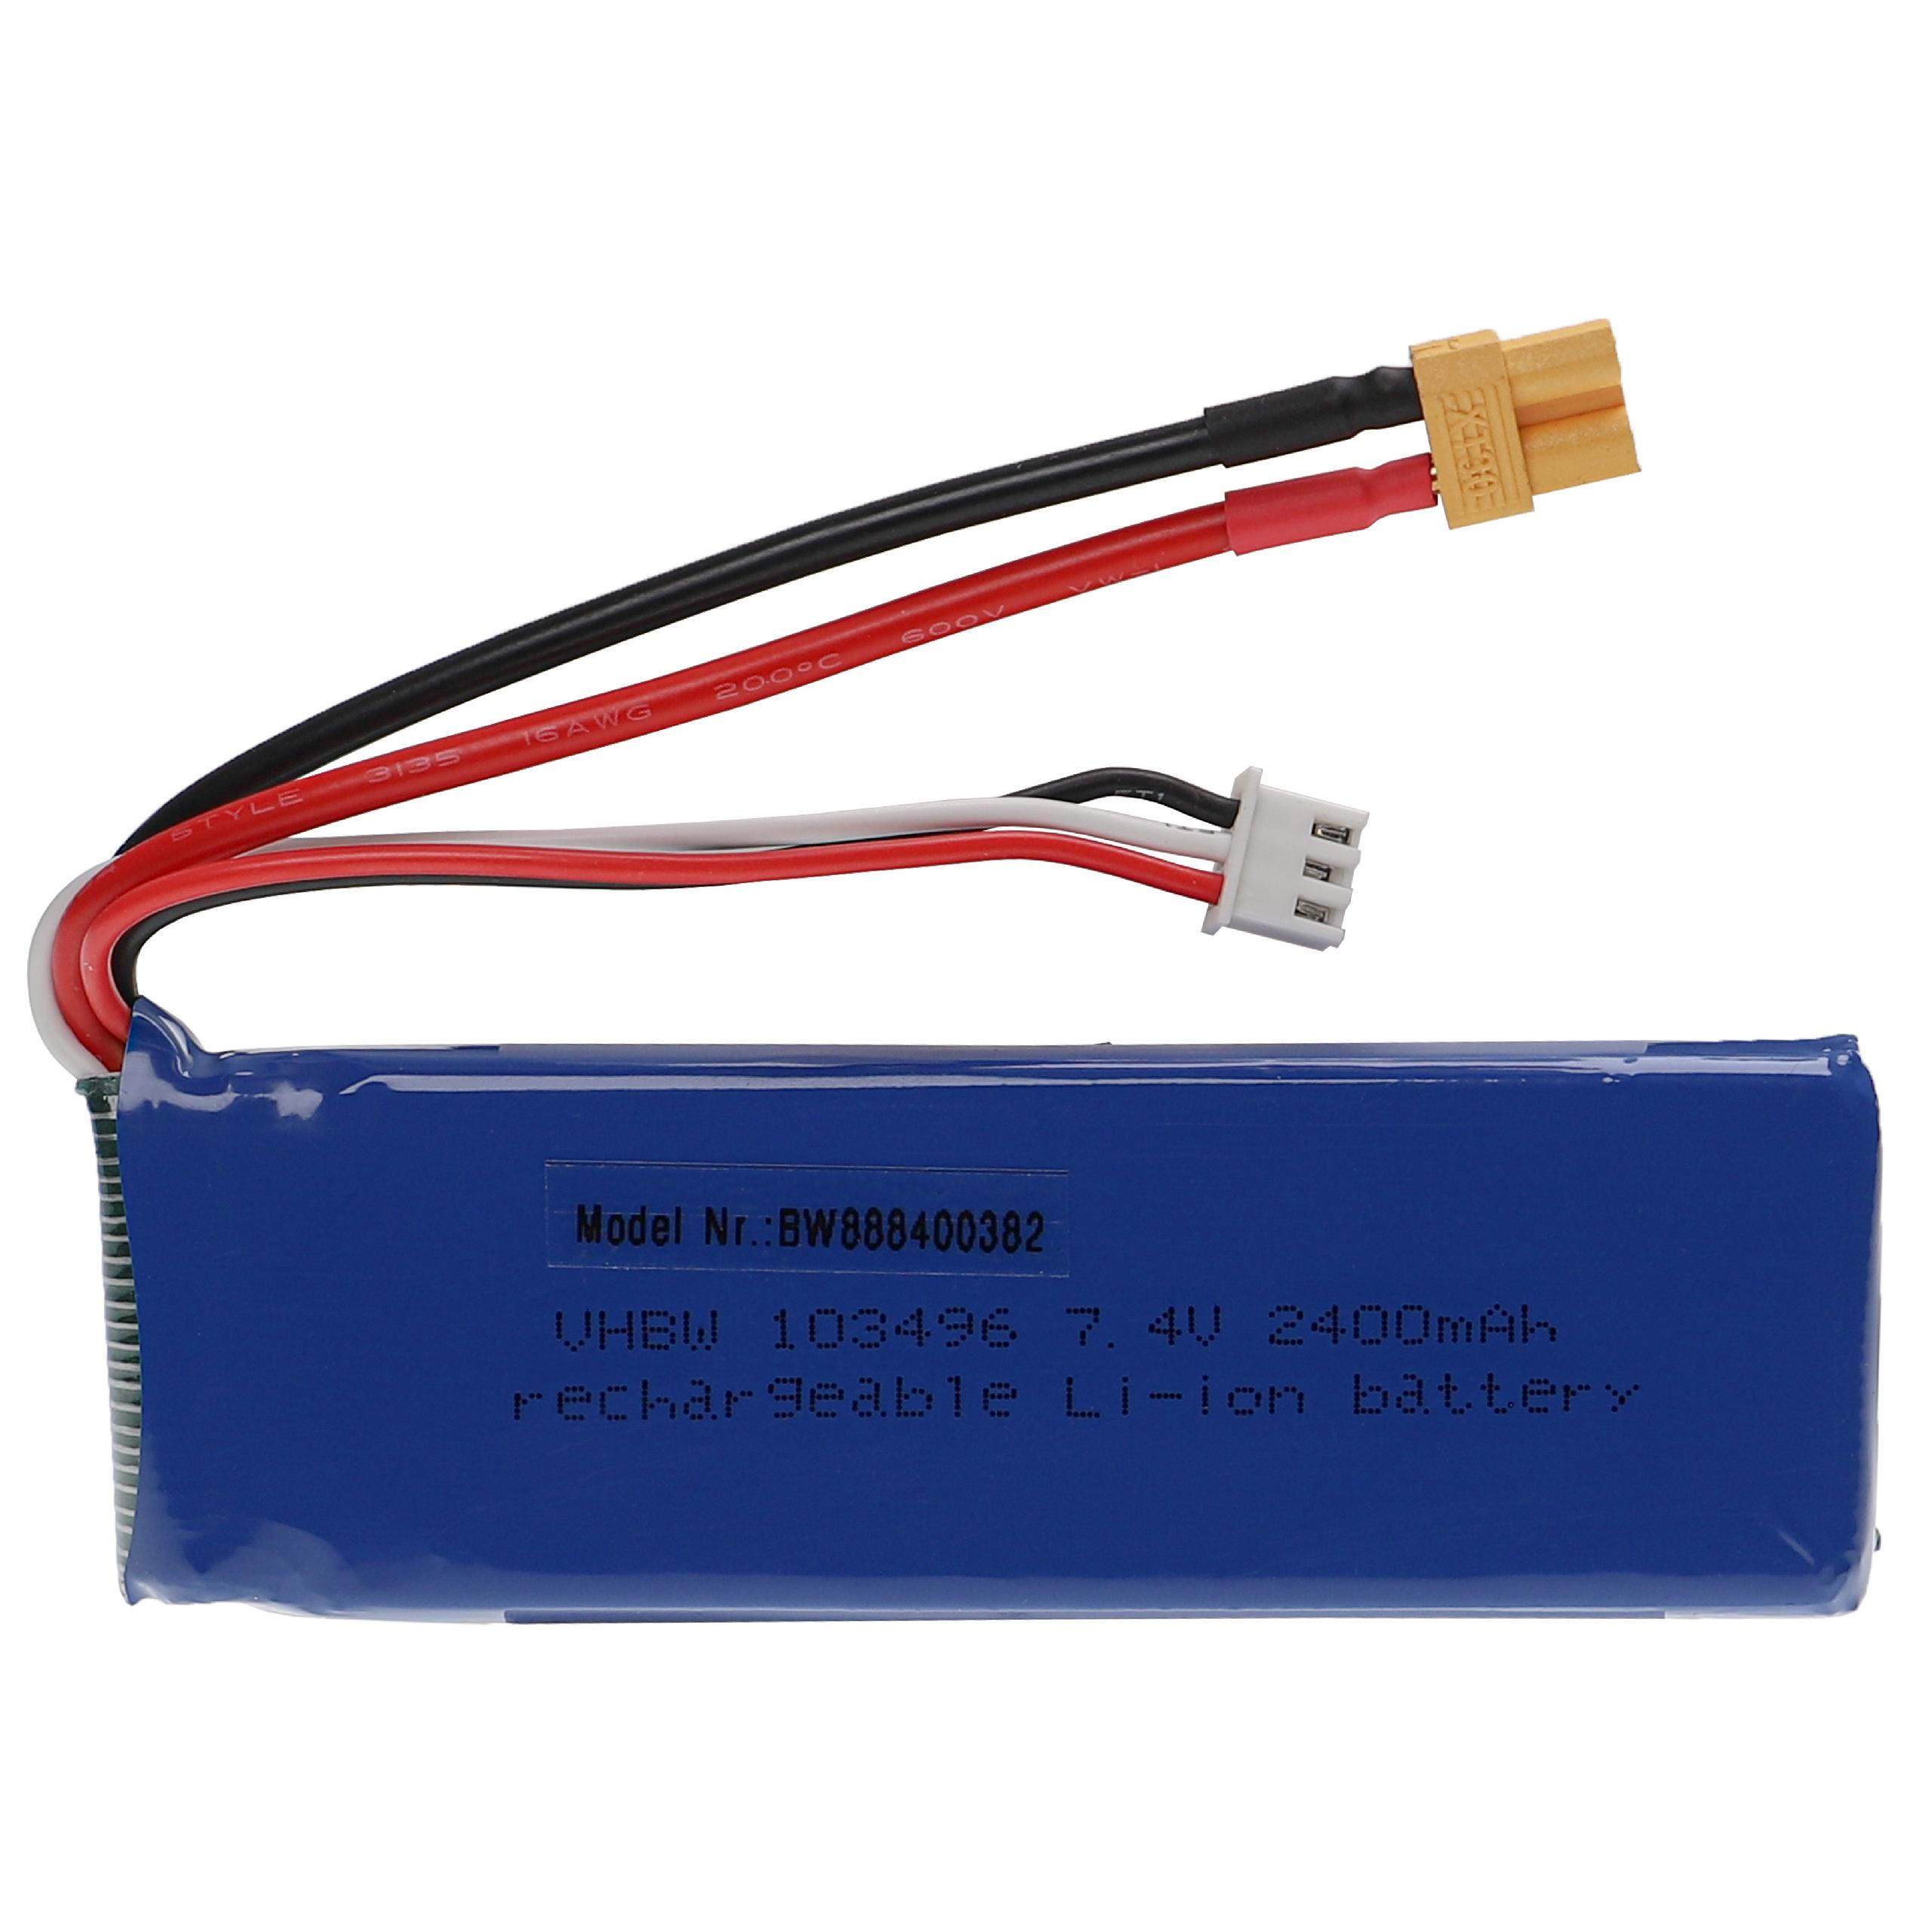 Batterie pour modèle radio-télécommandé - 2400mAh 7,4V Li-polymère, XT30